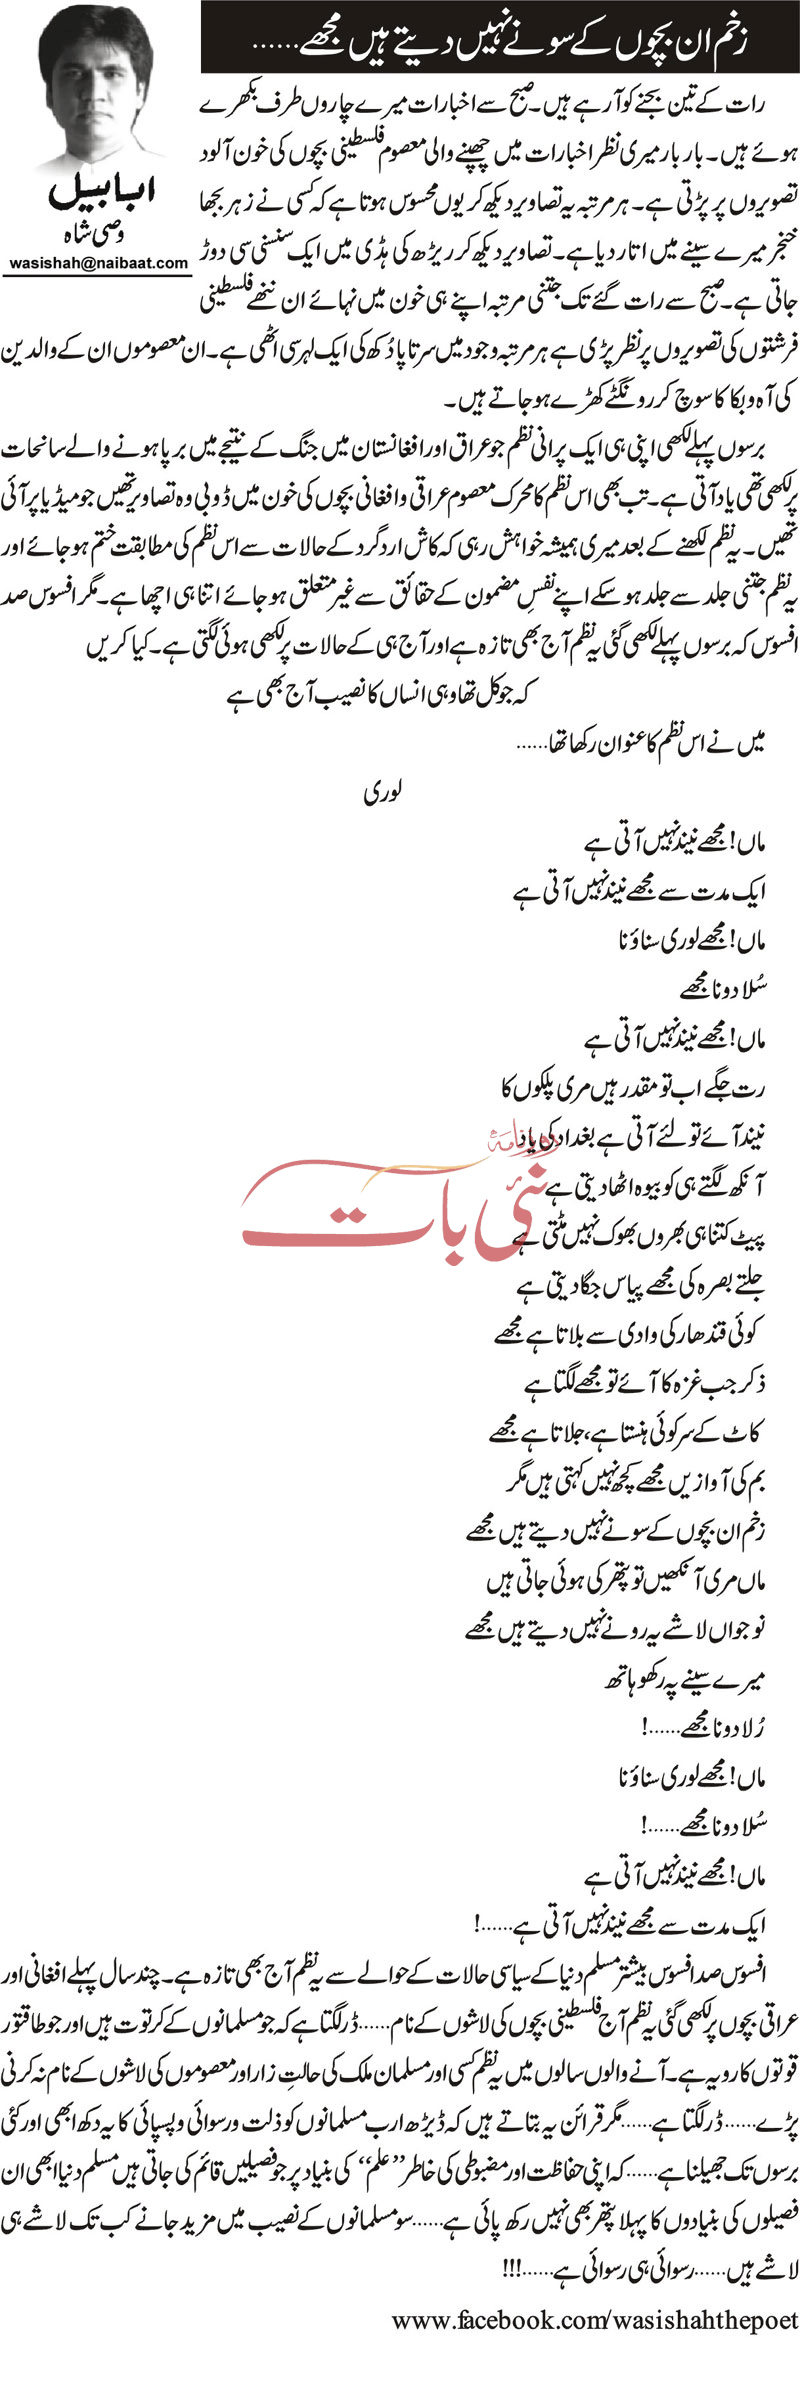 Zakham Un Bachon Kay Sonay Nahi Detay Hain Mujhay By Wasi Shah